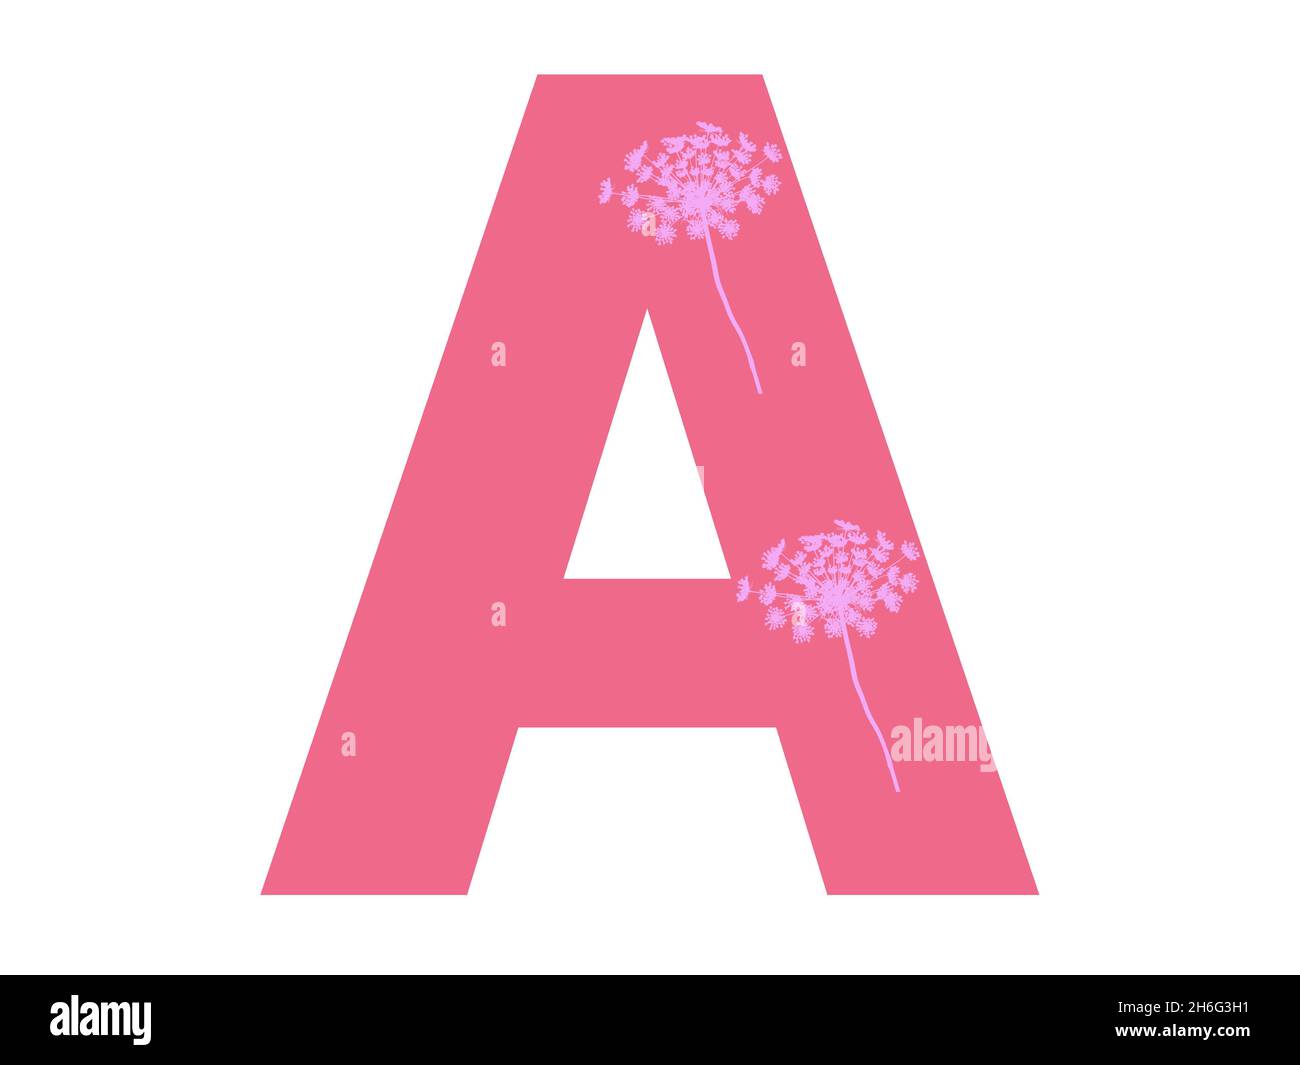 Lettre A de l'alphabet avec silhouette de fleur rose sur fond rose foncé, la lettre est isolée sur fond blanc Banque D'Images